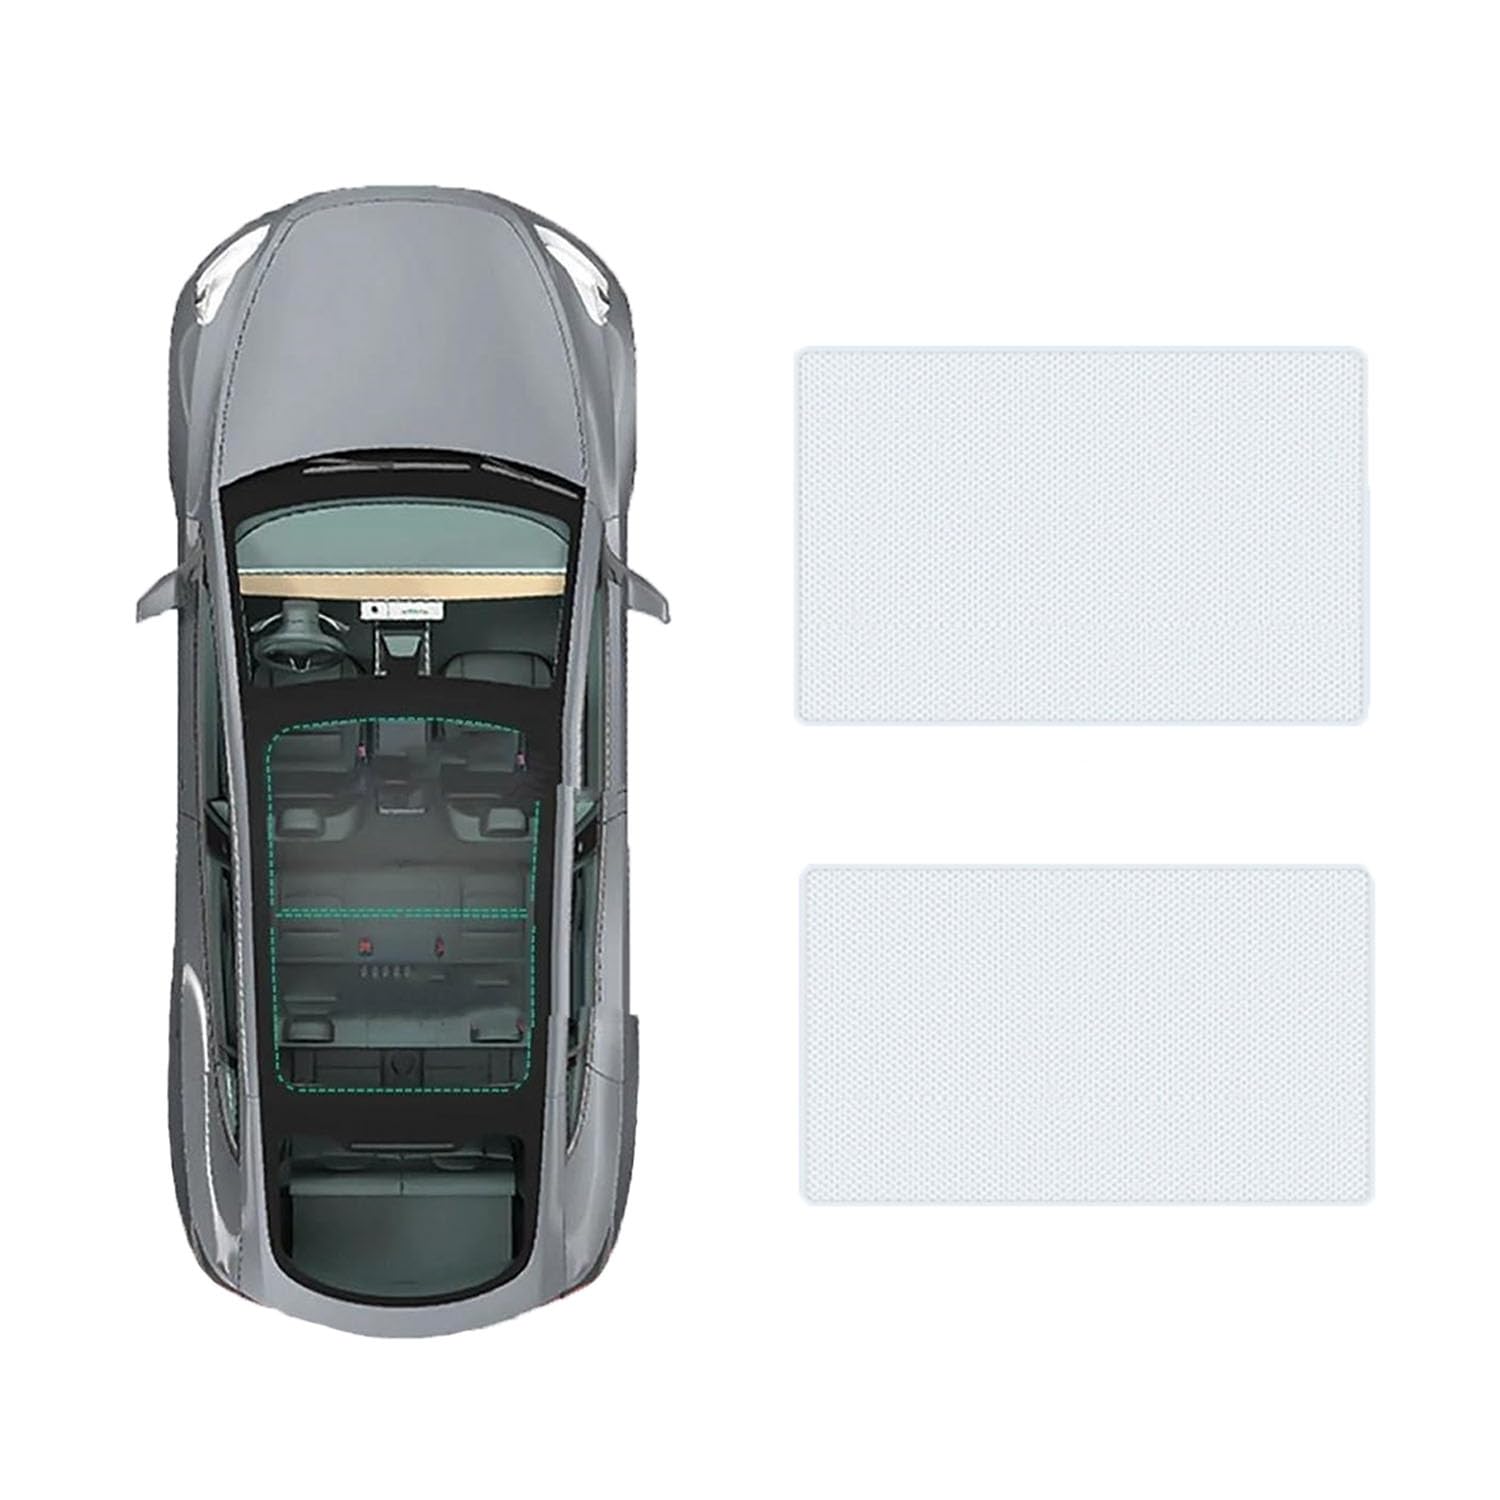 Für Hongqi E-HS9 2021- Auto-Schiebedach-Beschattung,Dach Wärme Isolierung Anti-UV Visier Auto Zubehör,A-Gray white regular Style von ANRAM